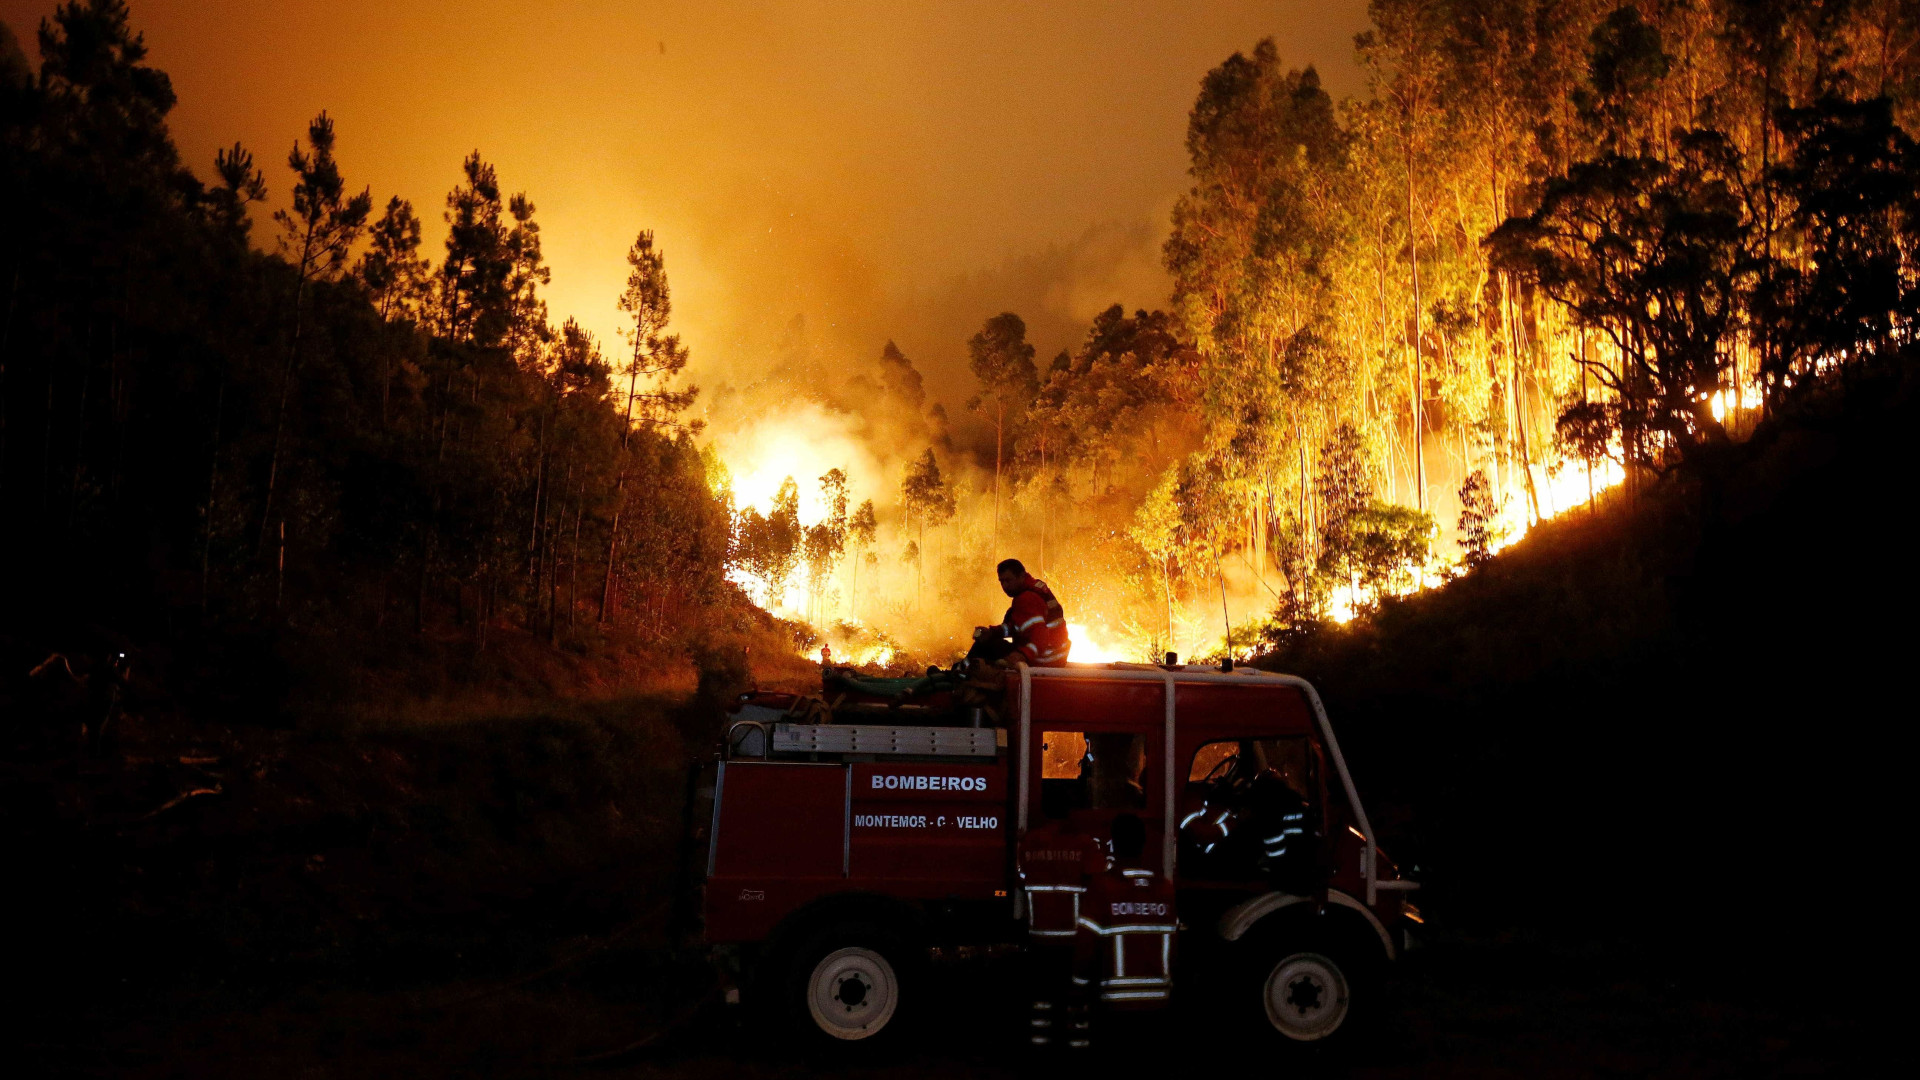 Novos incêndios florestais deixam ao menos 76 feridos em Portugal